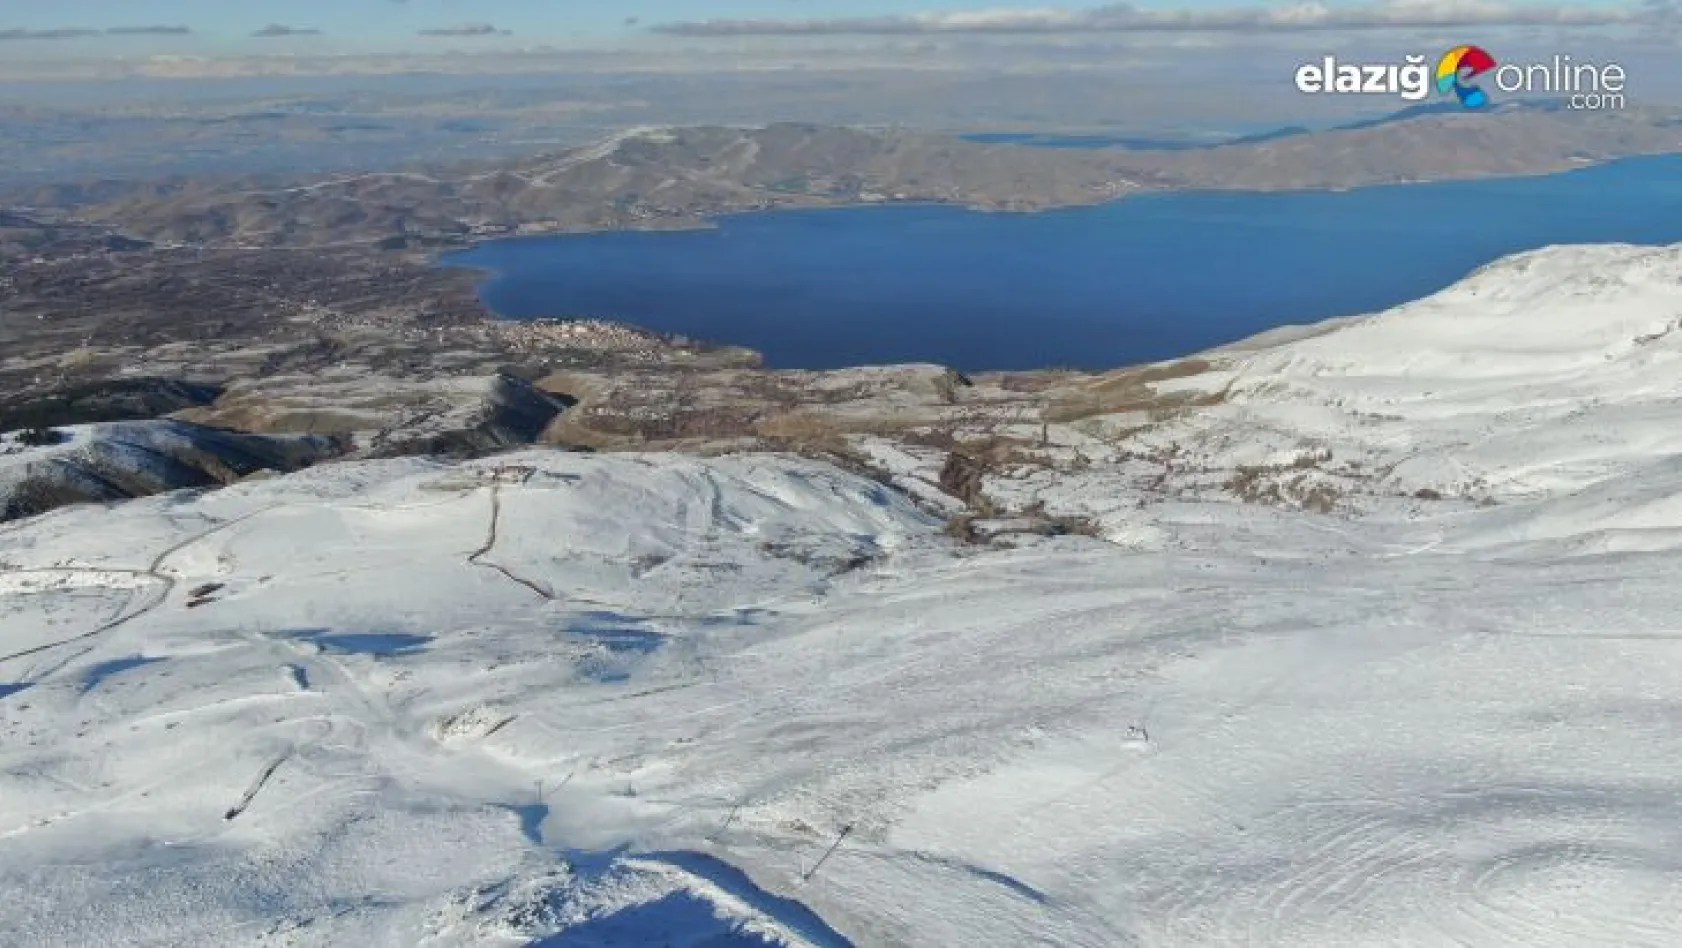 Hazar Gölü manzarası ile dikkat çeken Hazarbaba Kayak Merkezi, sezona hazırlanıyor